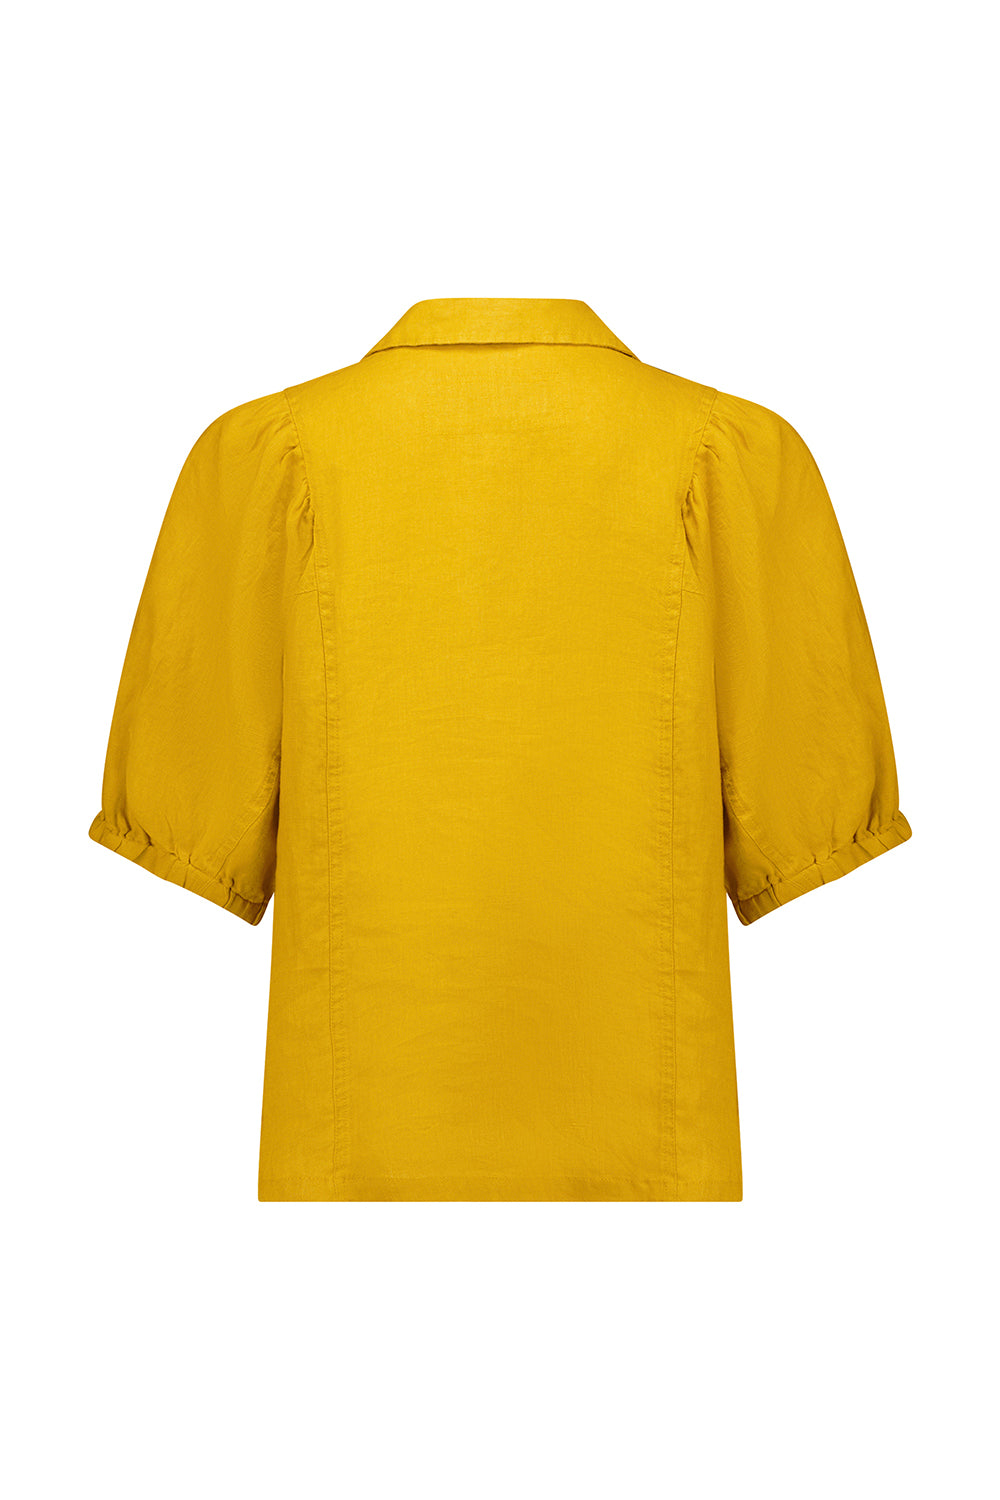 Adorn Shirt - Citrine - Shirt VERGE